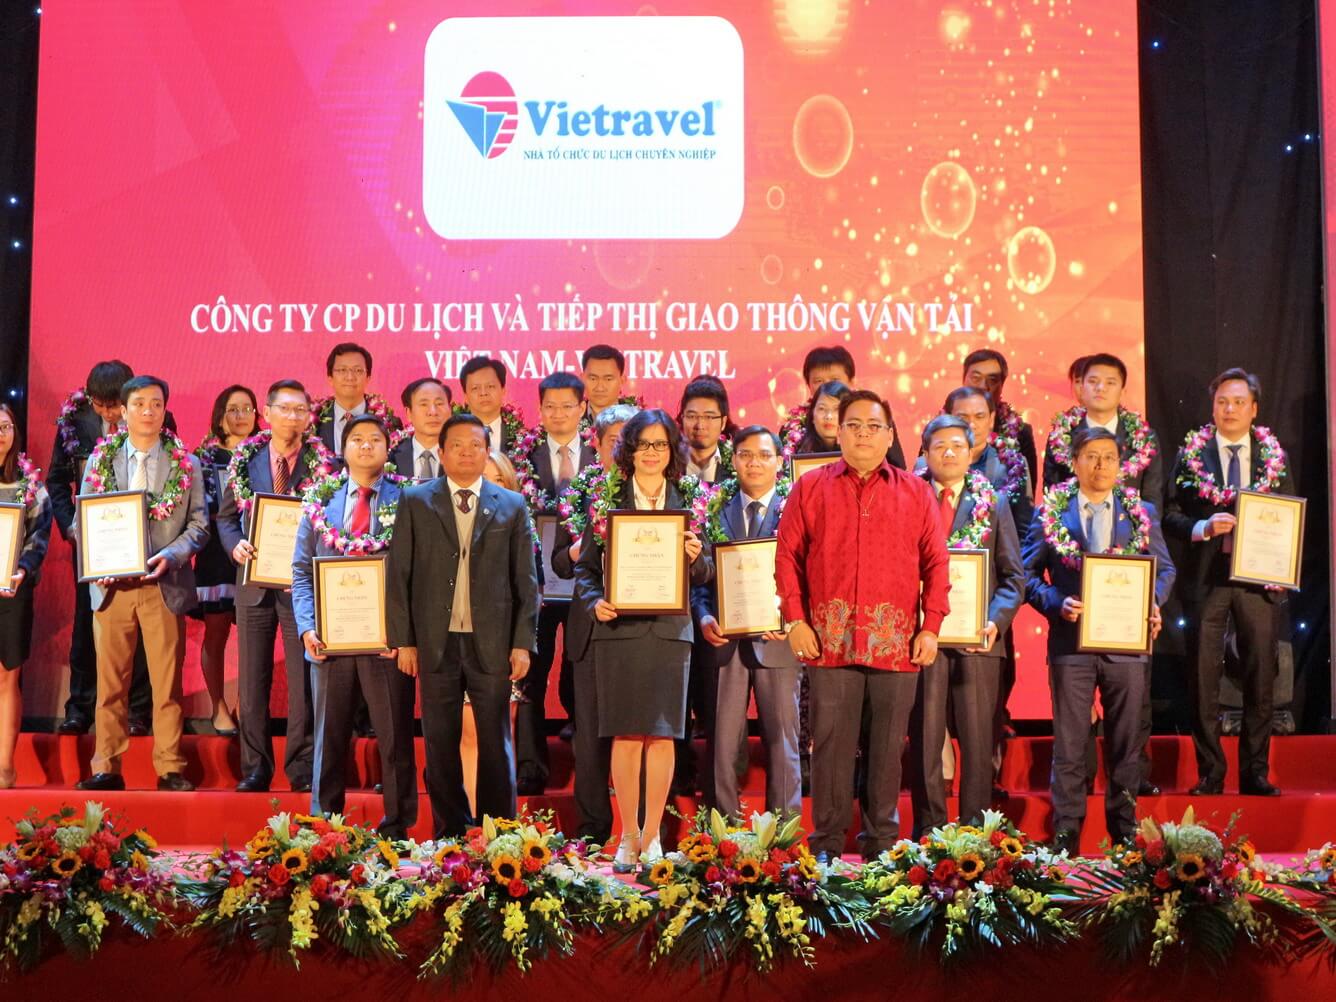 Viettravel - Tự hào Top 1 công ty du lịch - lữ hành uy tín